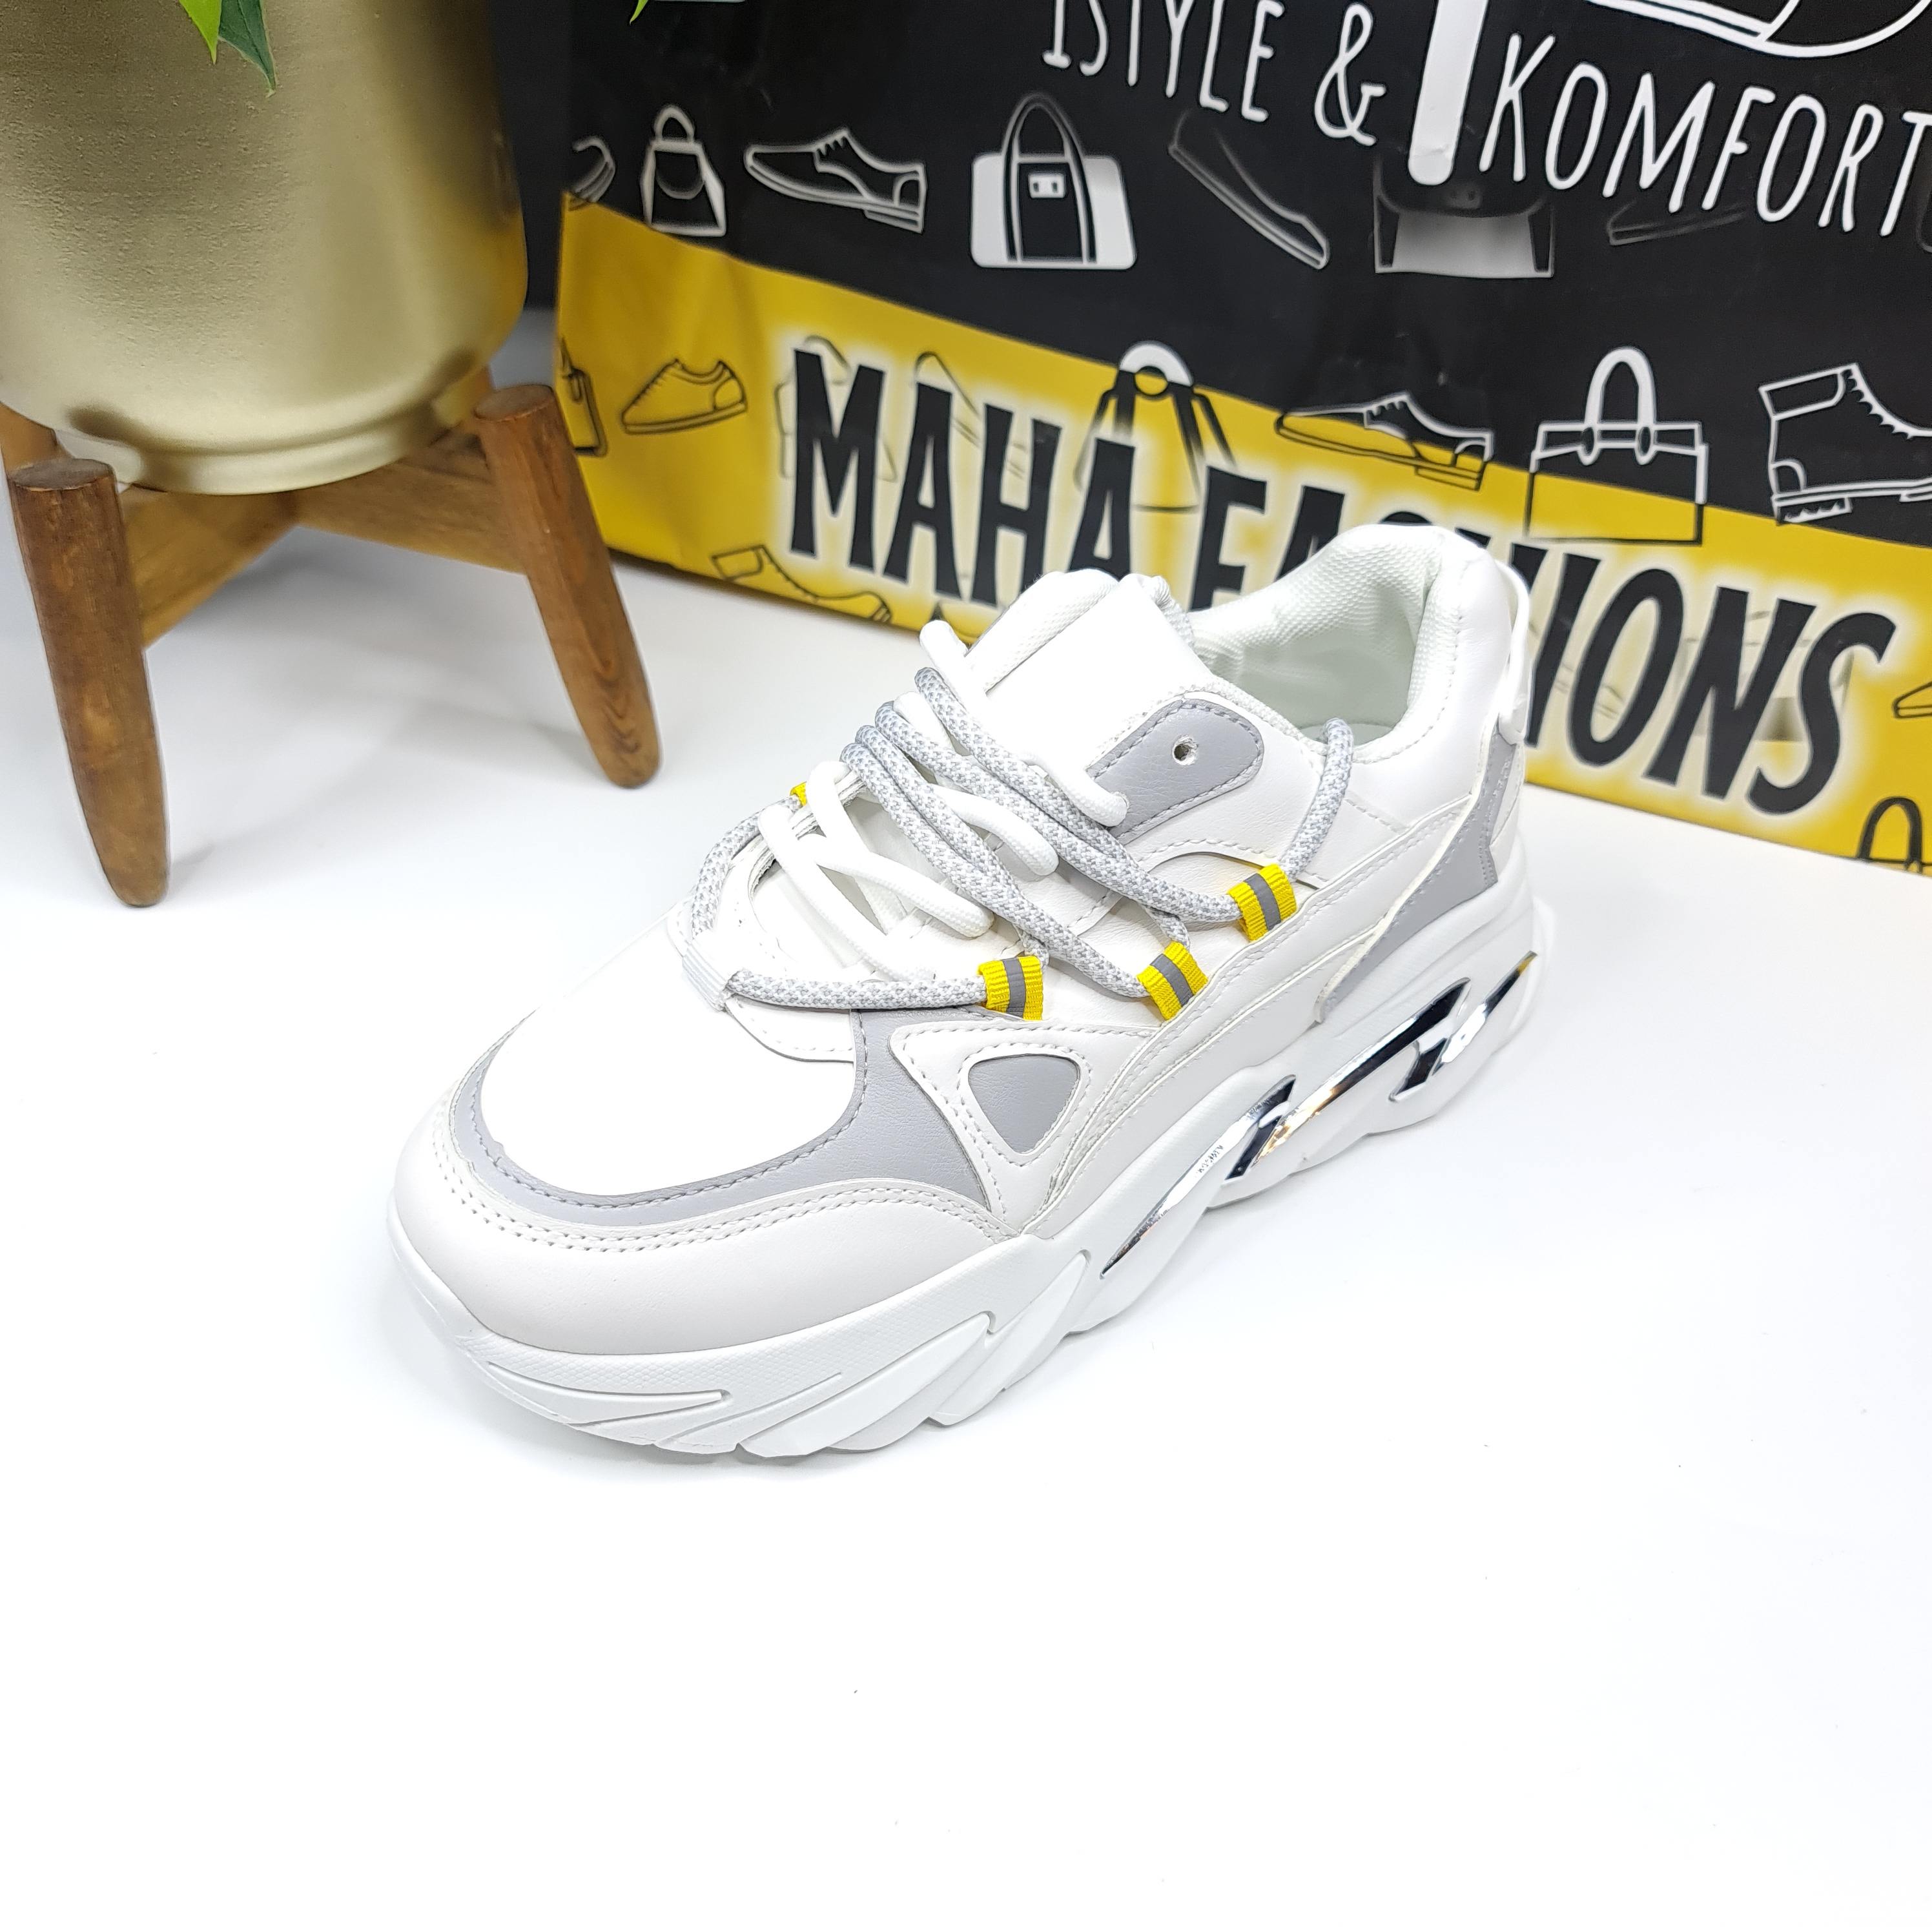 White Chunky Sneakers - Maha fashions -  